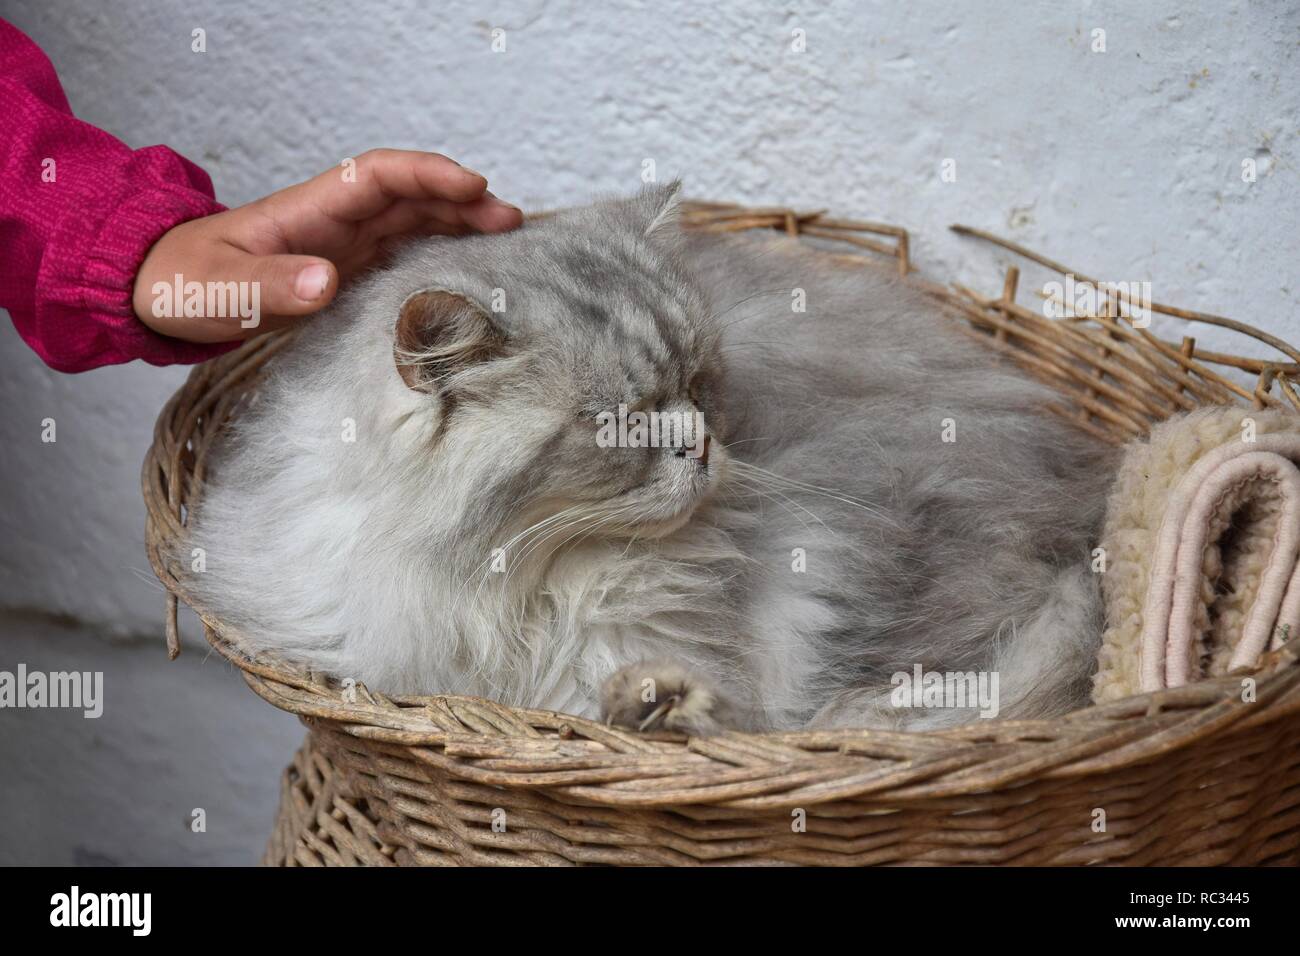 Eines Kindes Hand streichelt ein silber tabby Perser Katze, in einem Korb liegen. Stockfoto